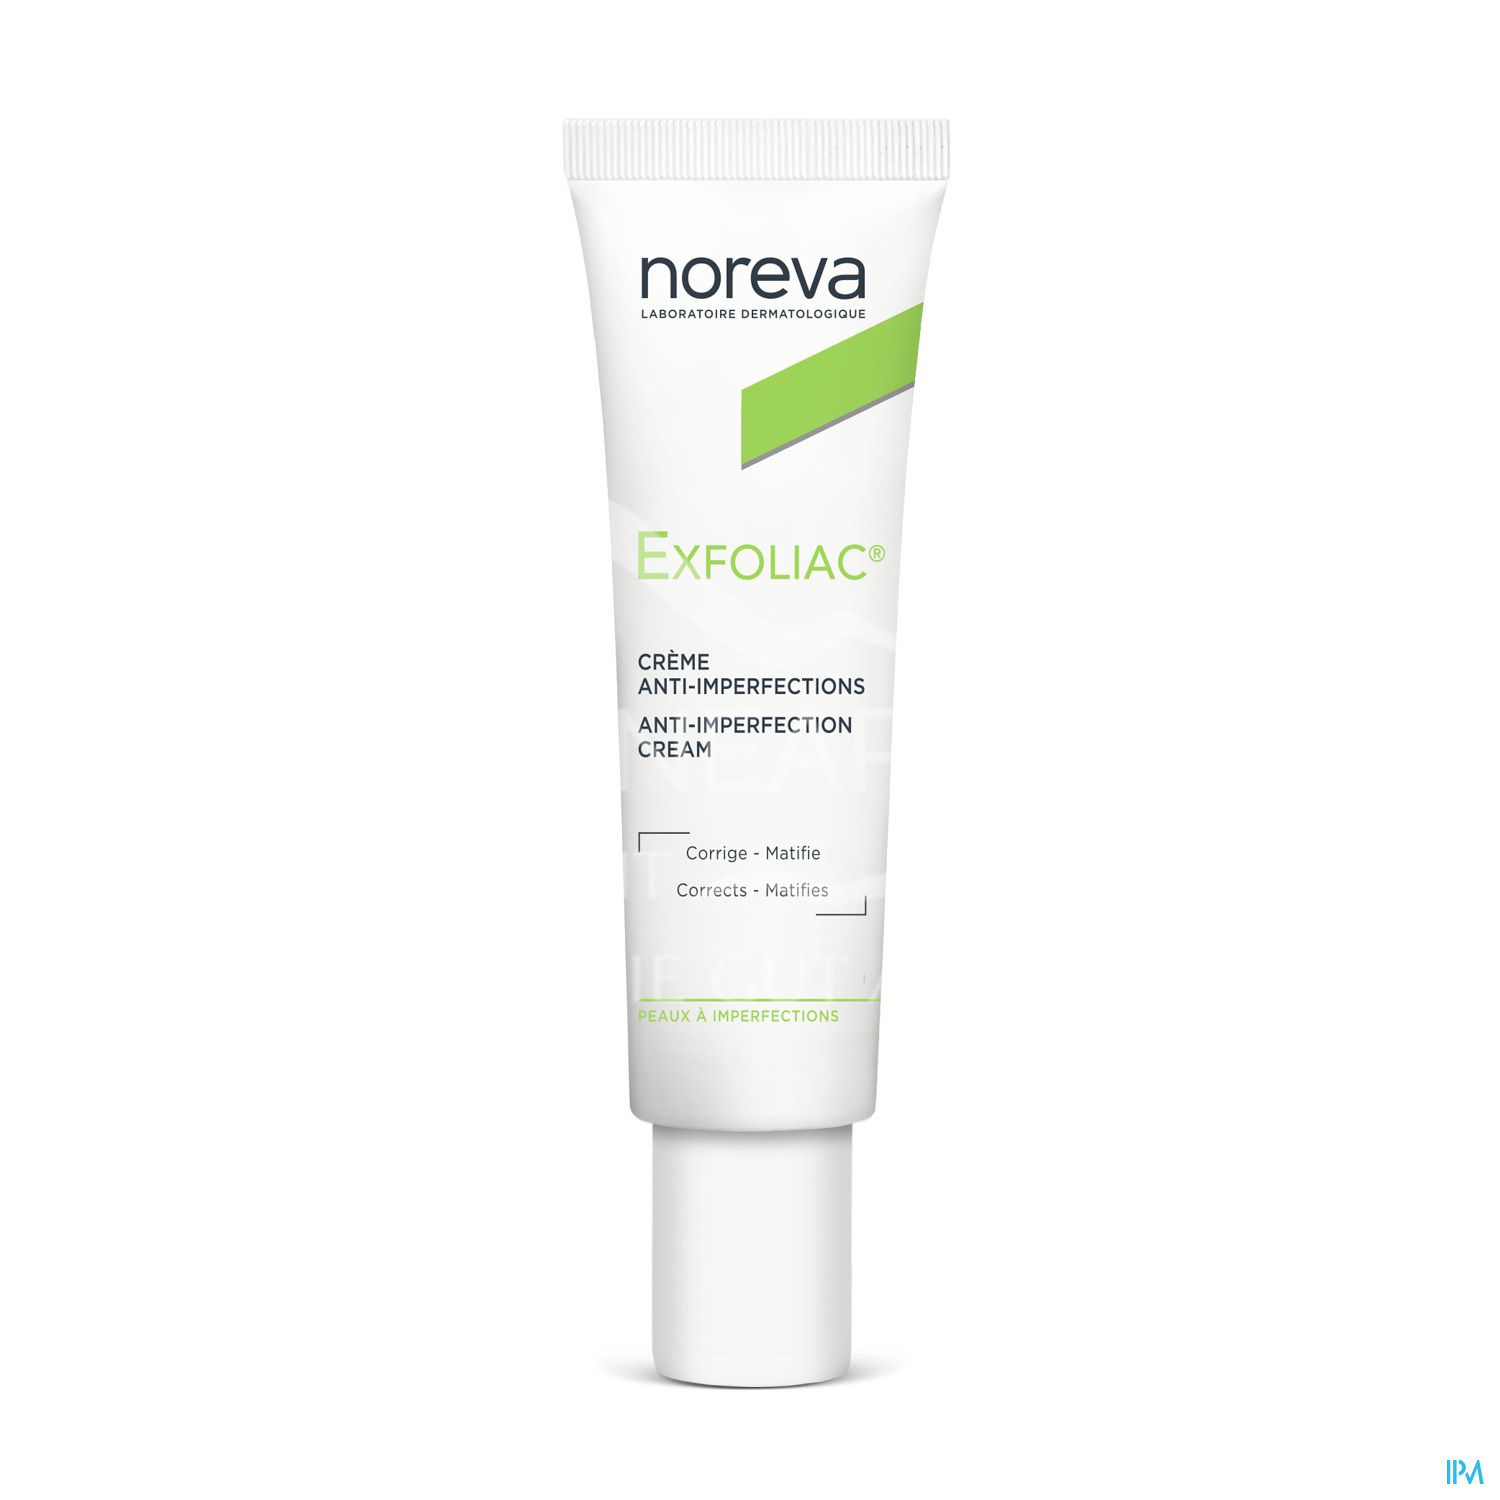 Noreva Exfoliac Creme